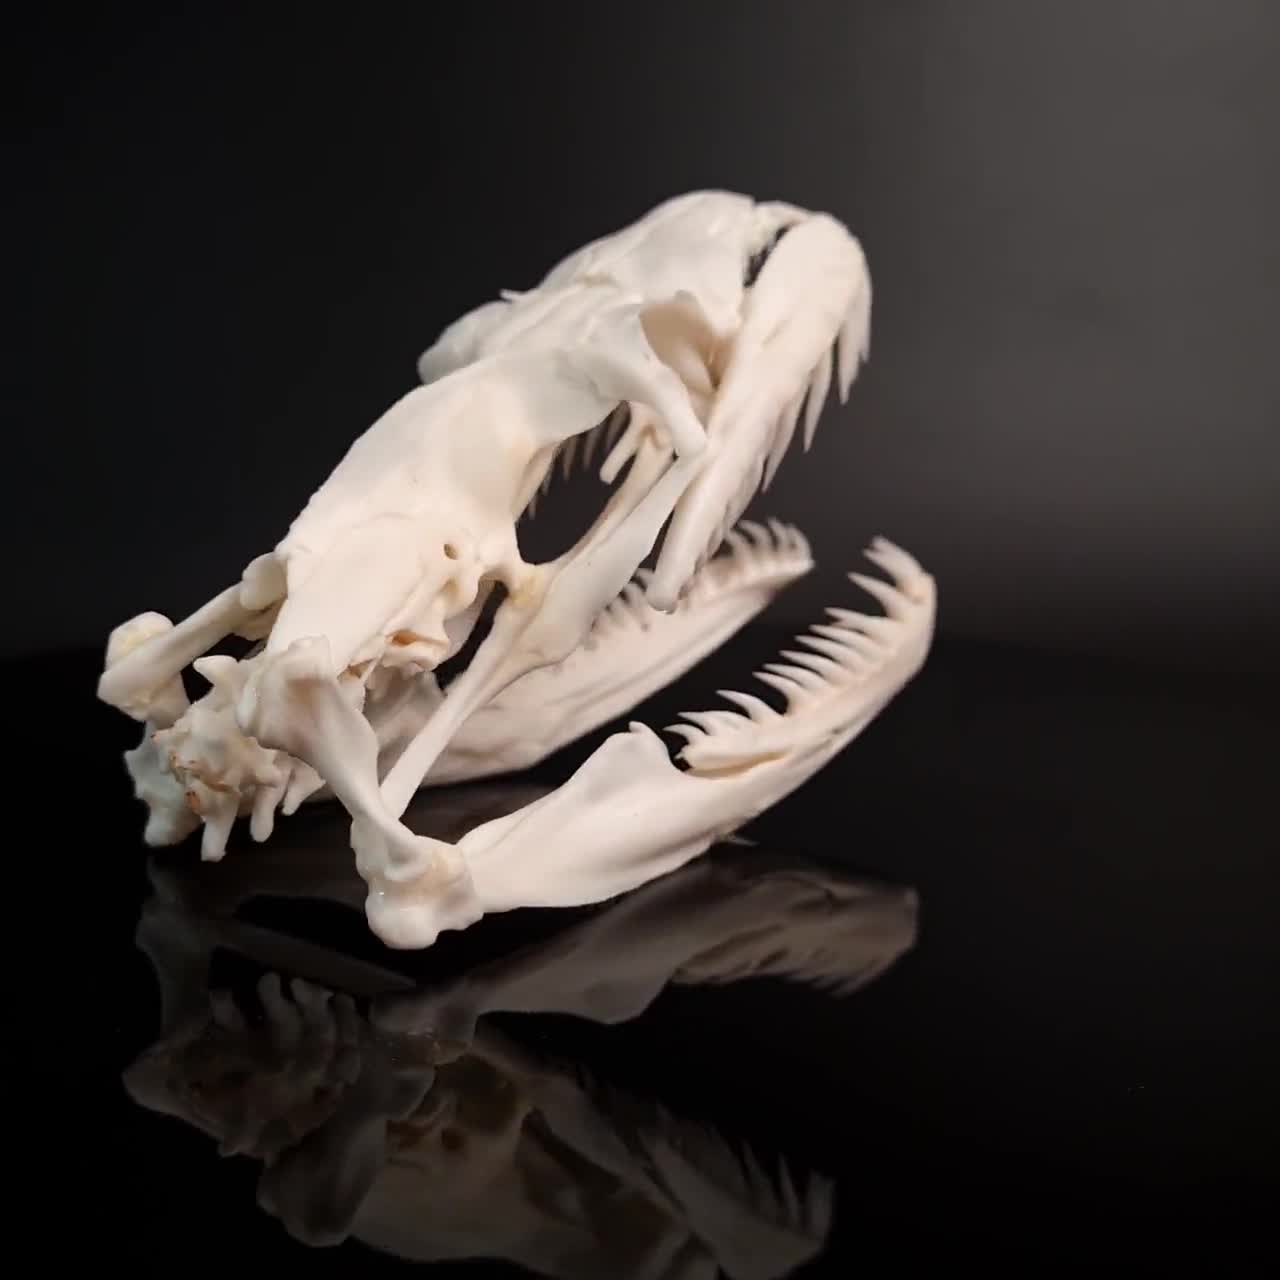 snake skull anatomy